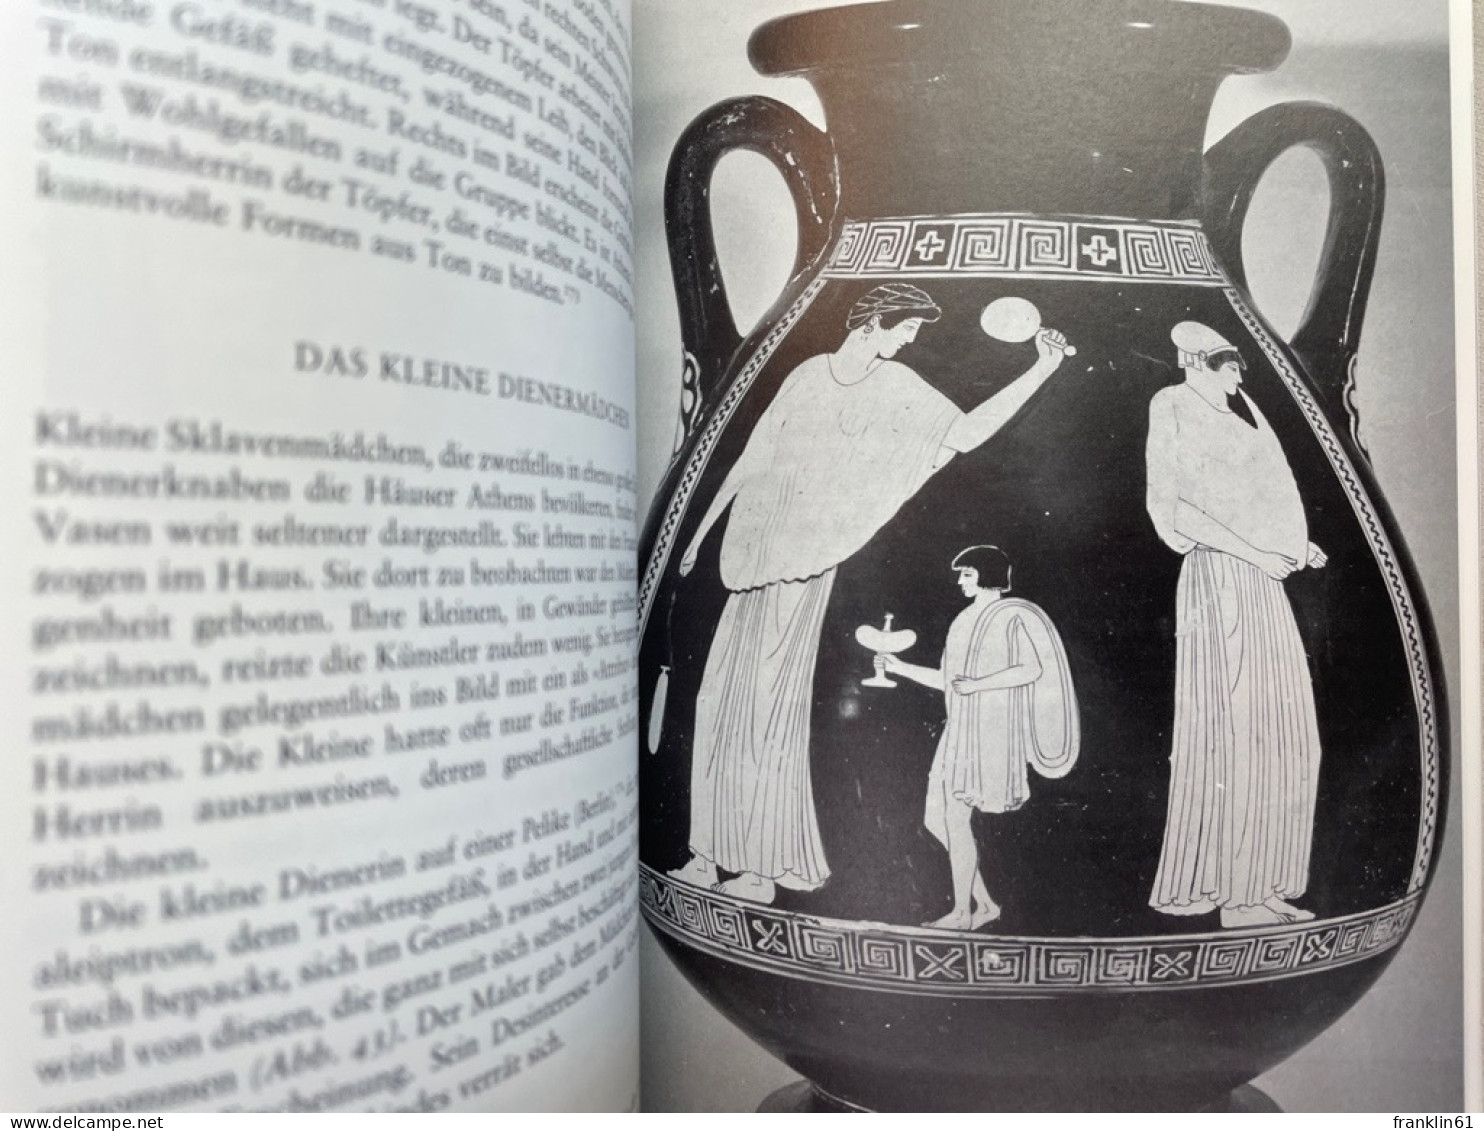 Kinderleben im klassischen Athen : Bilder auf klassischen Vasen.